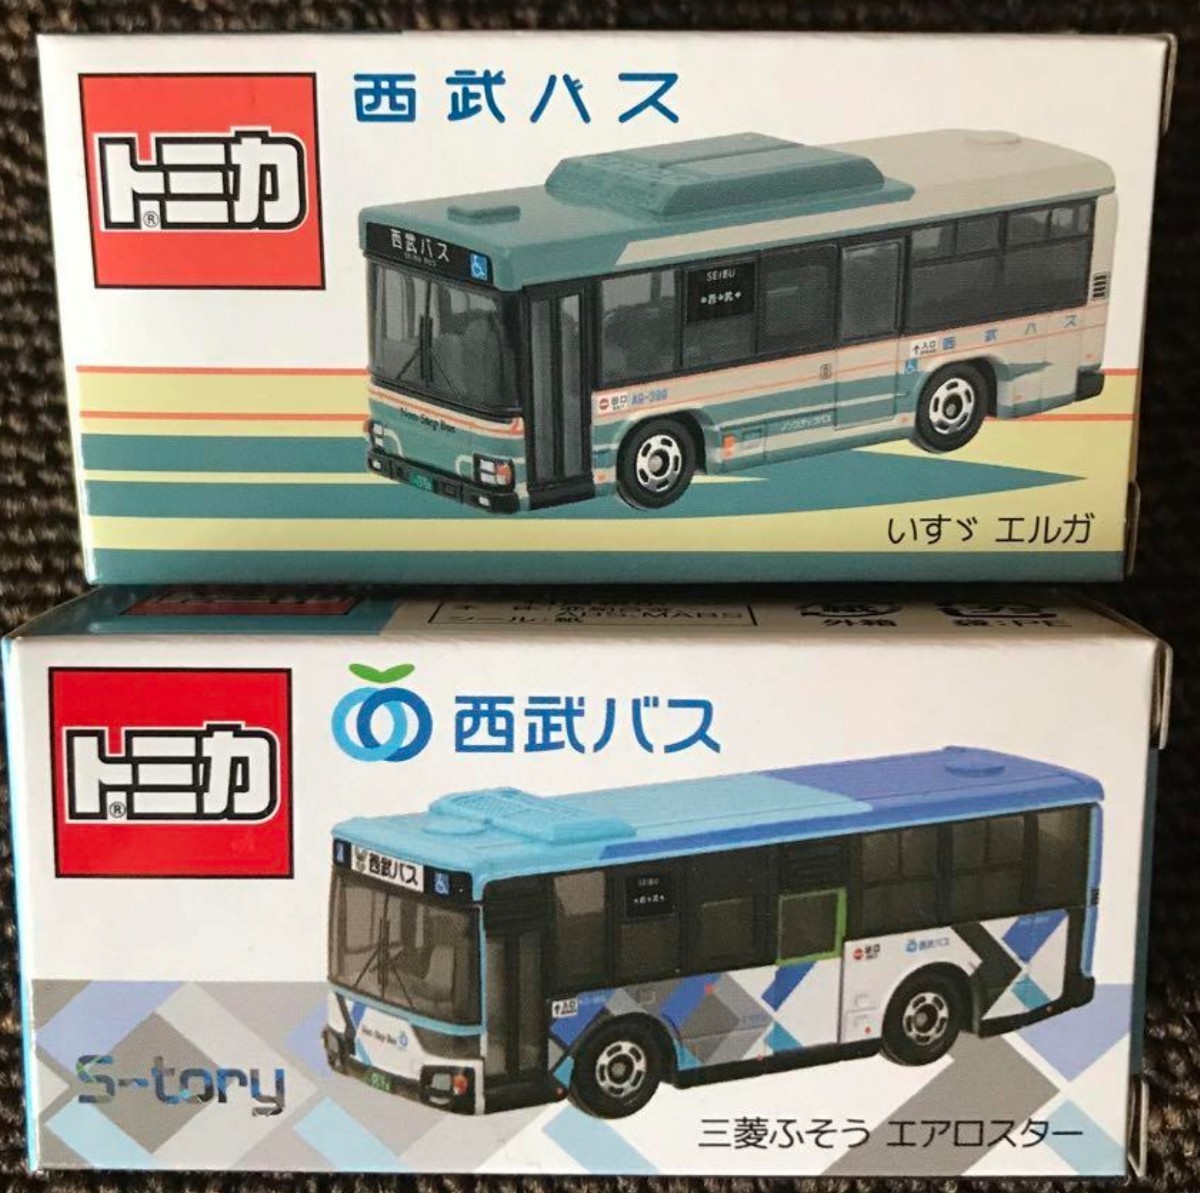  事業者限定トミカ 西武バス 三菱ふそうエアロスター & いすゞエルガ 2台セット_画像1